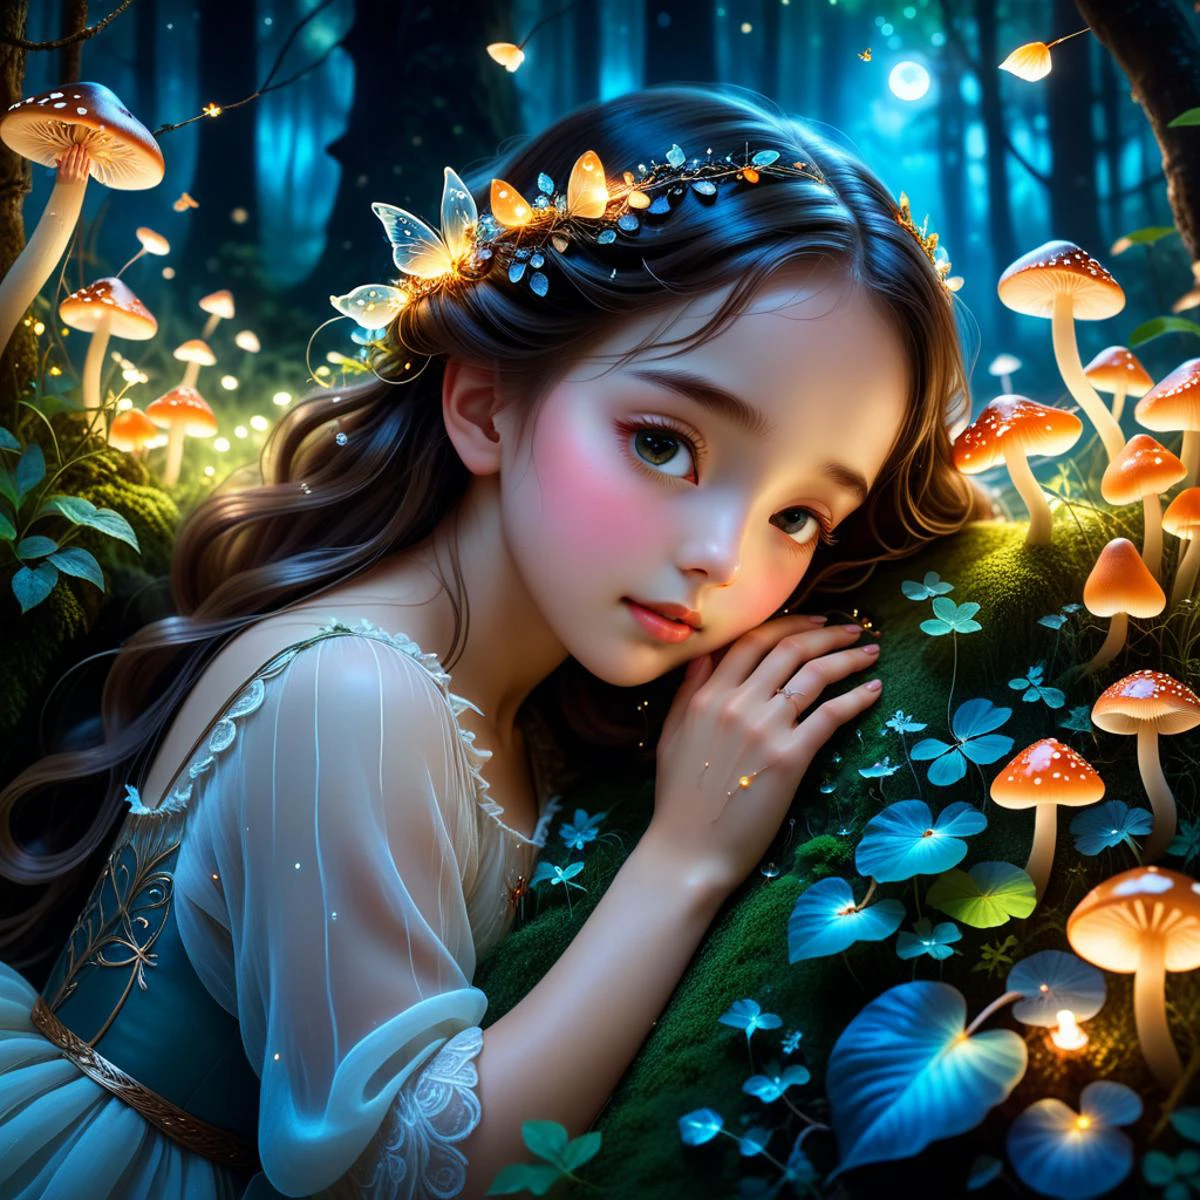 Маленькая девочка спит в объятиях Лесной Богини.,волшебный лес,сказочные цвета,ночь,светящиеся грибы,сверкающие светлячки,Мягкий лунный свет,деликатные детали,Фэнтези-арт,детальные текстуры,пышная зелень,волшебная атмосфера,безмятежный и мирный,красивый и неземной,девочка занимает 1/5 изображения,девушка в нижней части изображения посередине,Высокие деревья,густая листва,пасмурное небо,сумрачный лес,драматическая перспектива,грандиозный масштаб,чувство трепета,лес в центре внимания,Аниме стиль,большие глаза,милые черты лица,мягкие волосы,струящееся платье,милое и невинное выражение лица,яркие цвета,причудливый и очаровательный,детское чудо,красивый и очаровательный,**Подробные руки,Изящные пальцы,элегантные кончики пальцев,естественные позы рук,Реалистичная анатомия кисти,мягкая кожа,нежные вены,Идеальные ногти,Пять пальцев,пять цифр,Правильное строение рук,Никаких лишних пальцев,четко выраженные пальцы**,